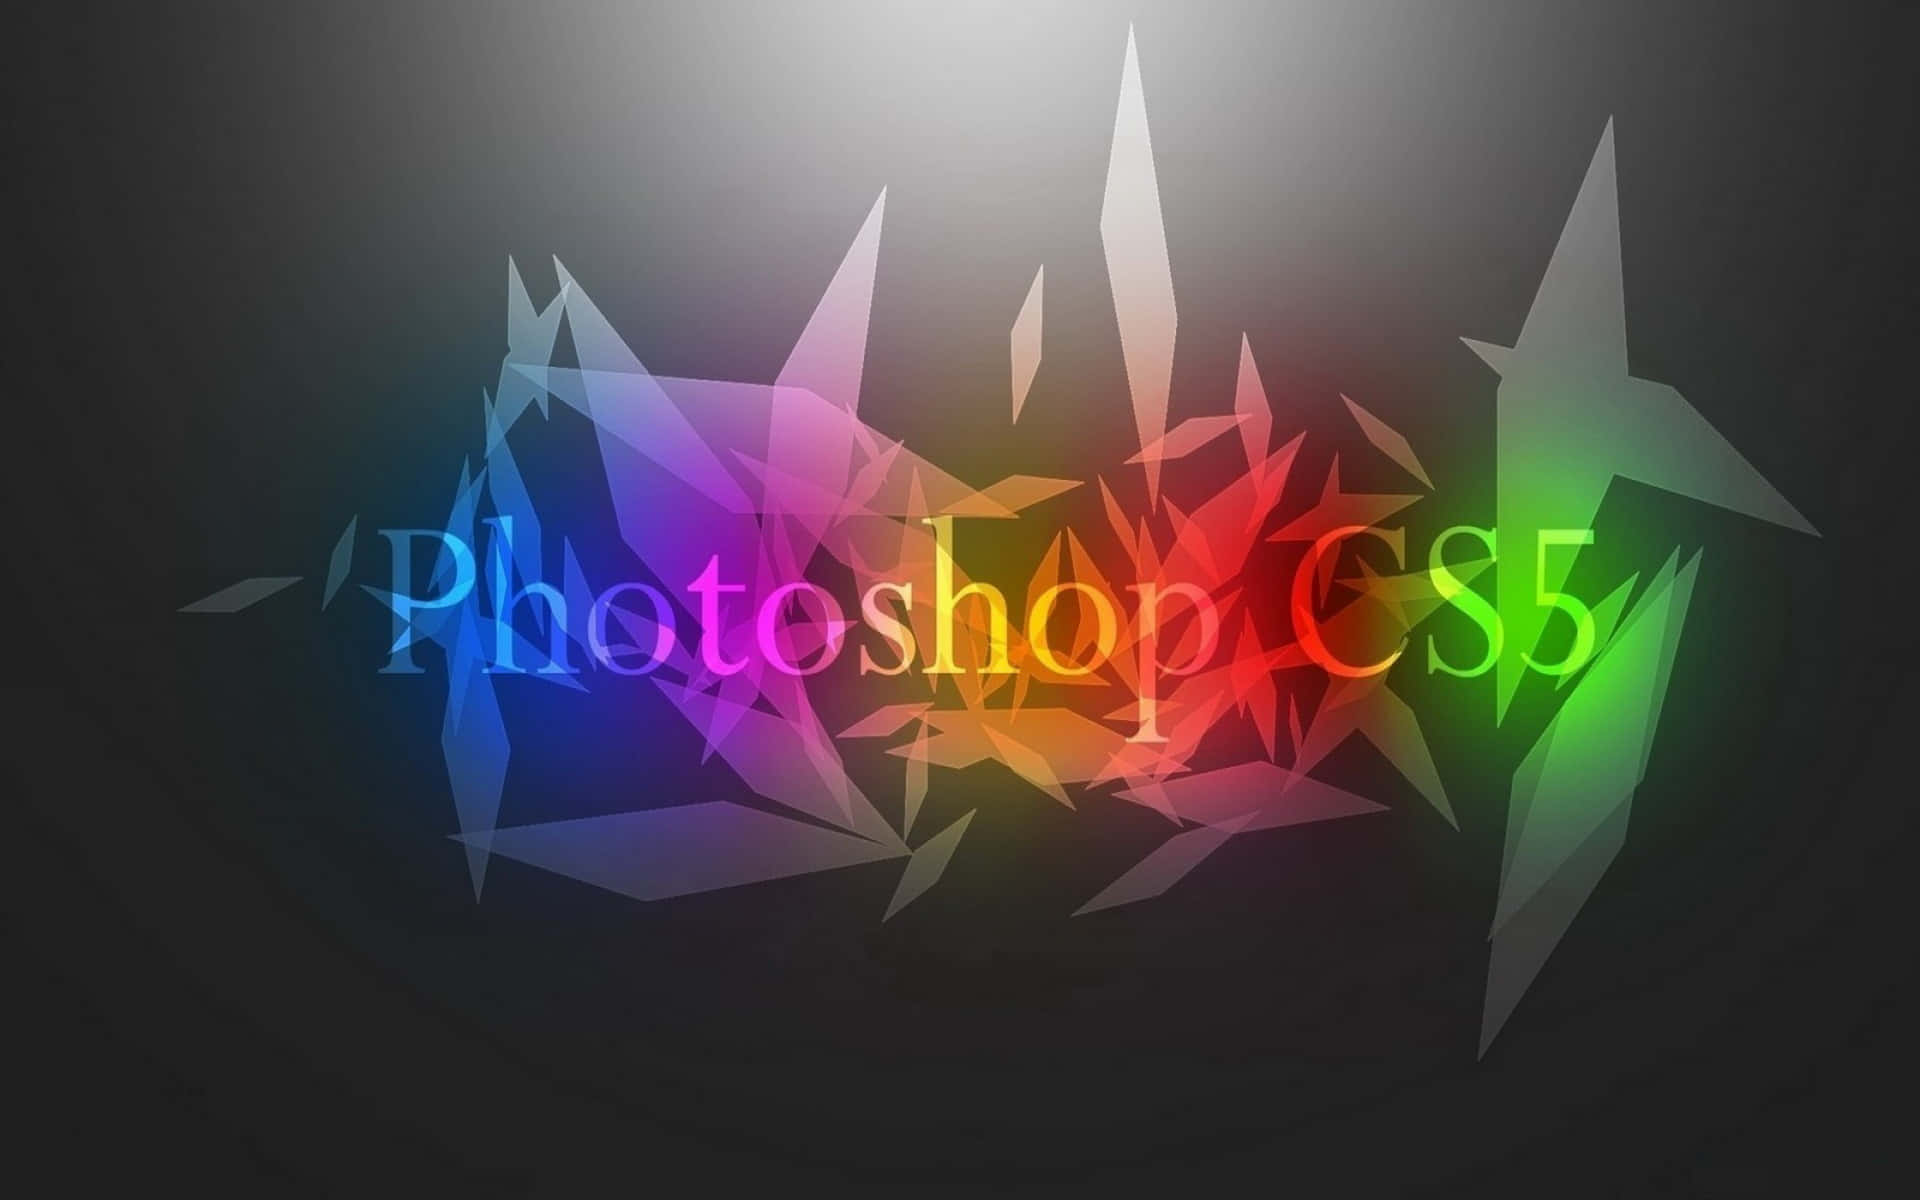 Bunterhintergrund Für Adobe Photoshop Cs5